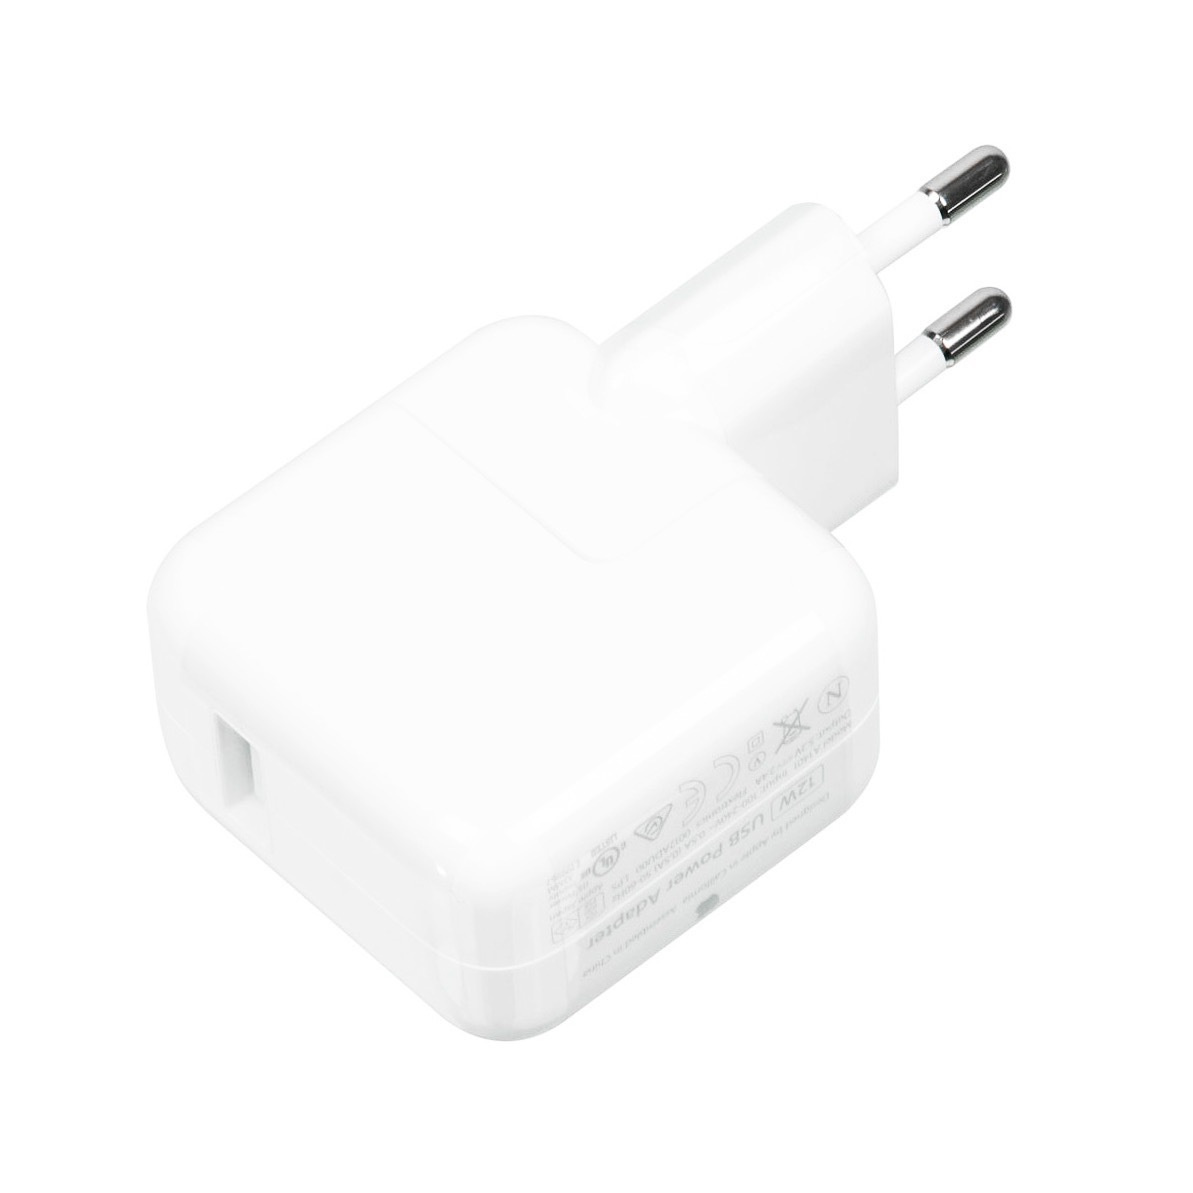 Купить зарядку эпл. Адаптер Apple 12w USB Power Adapter. Сетевая зарядка Apple md836zm/a. Адаптер зарядка Apple 12w. Сетевое зарядное устройство Apple mhje3zm/a.